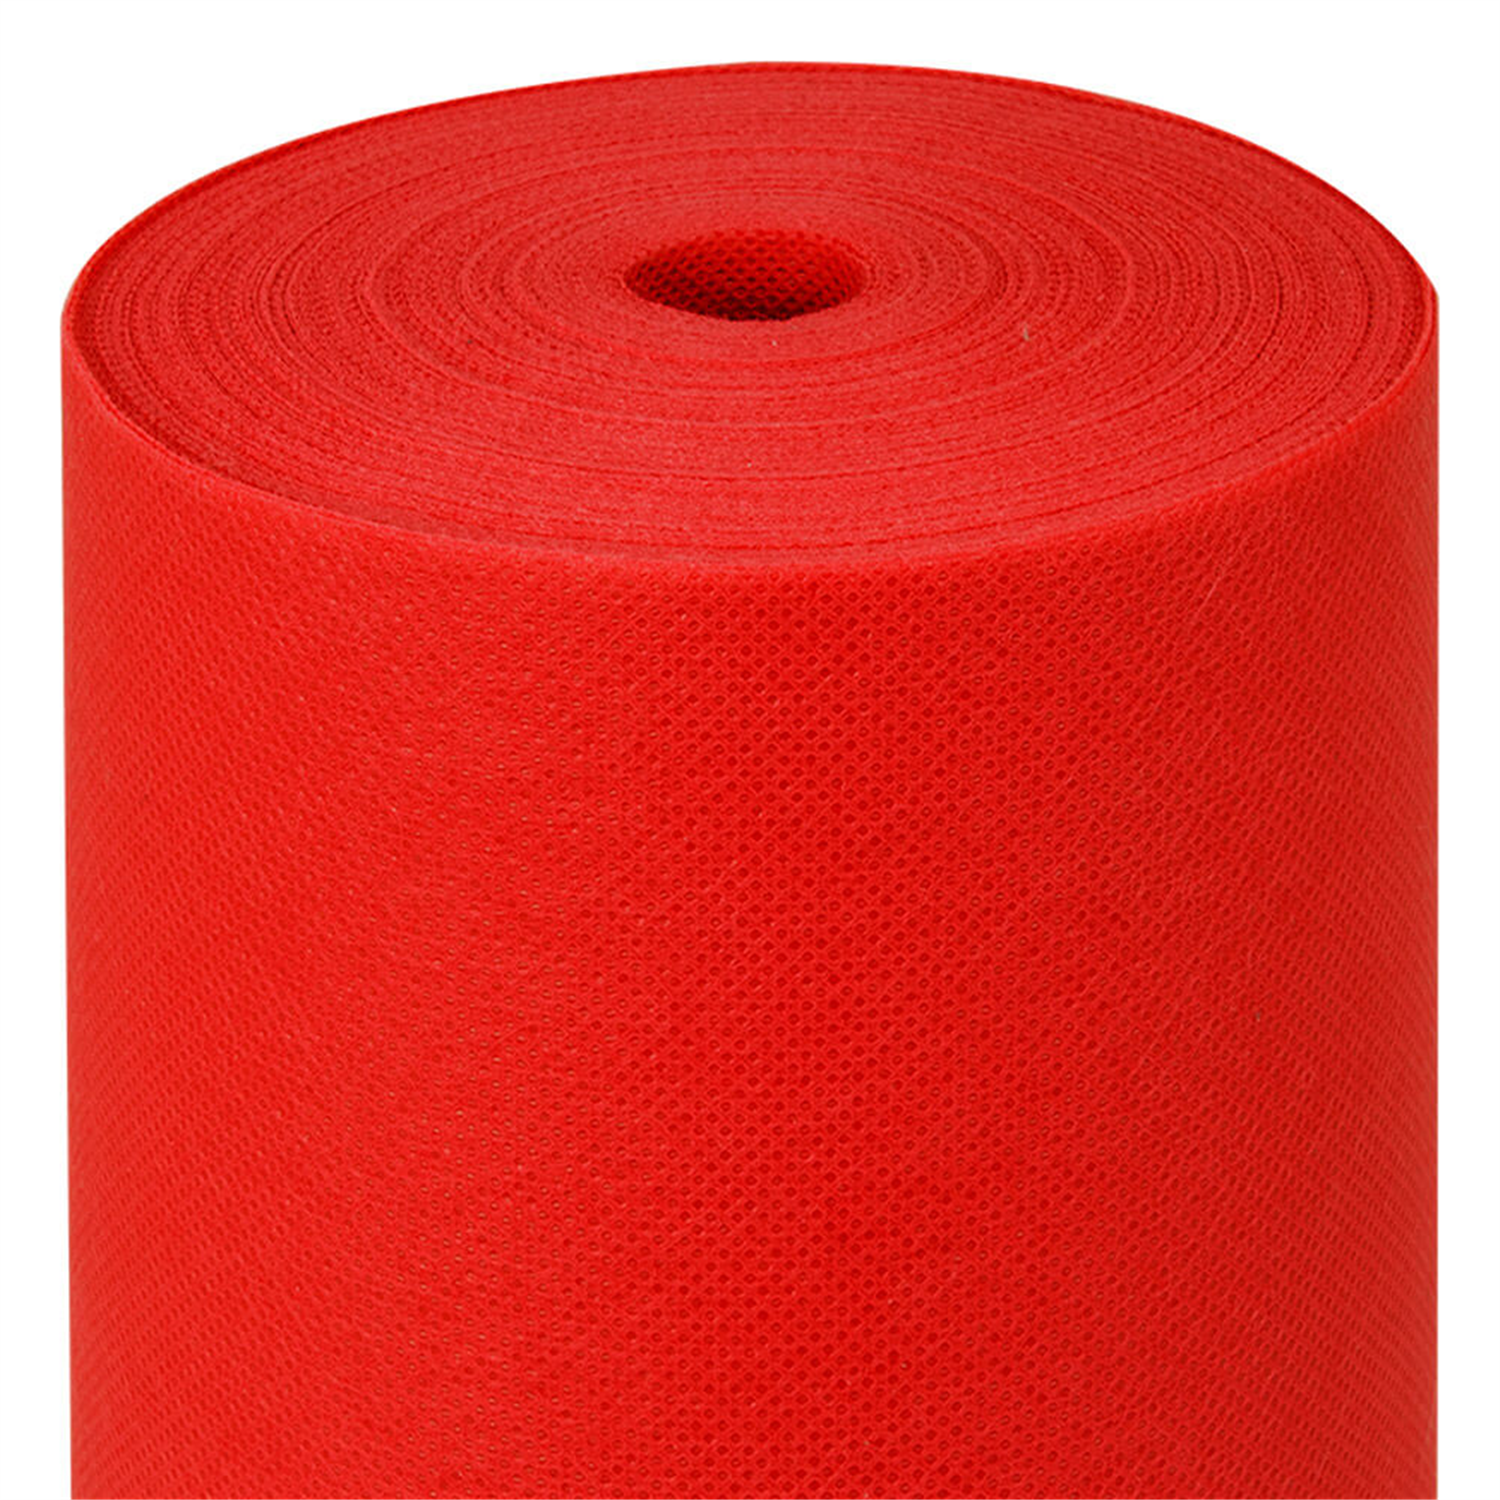 rouleau-nappe-papier-intisse-spunbond-predecoupe-rouge-1m20x50m40-prosaveurs